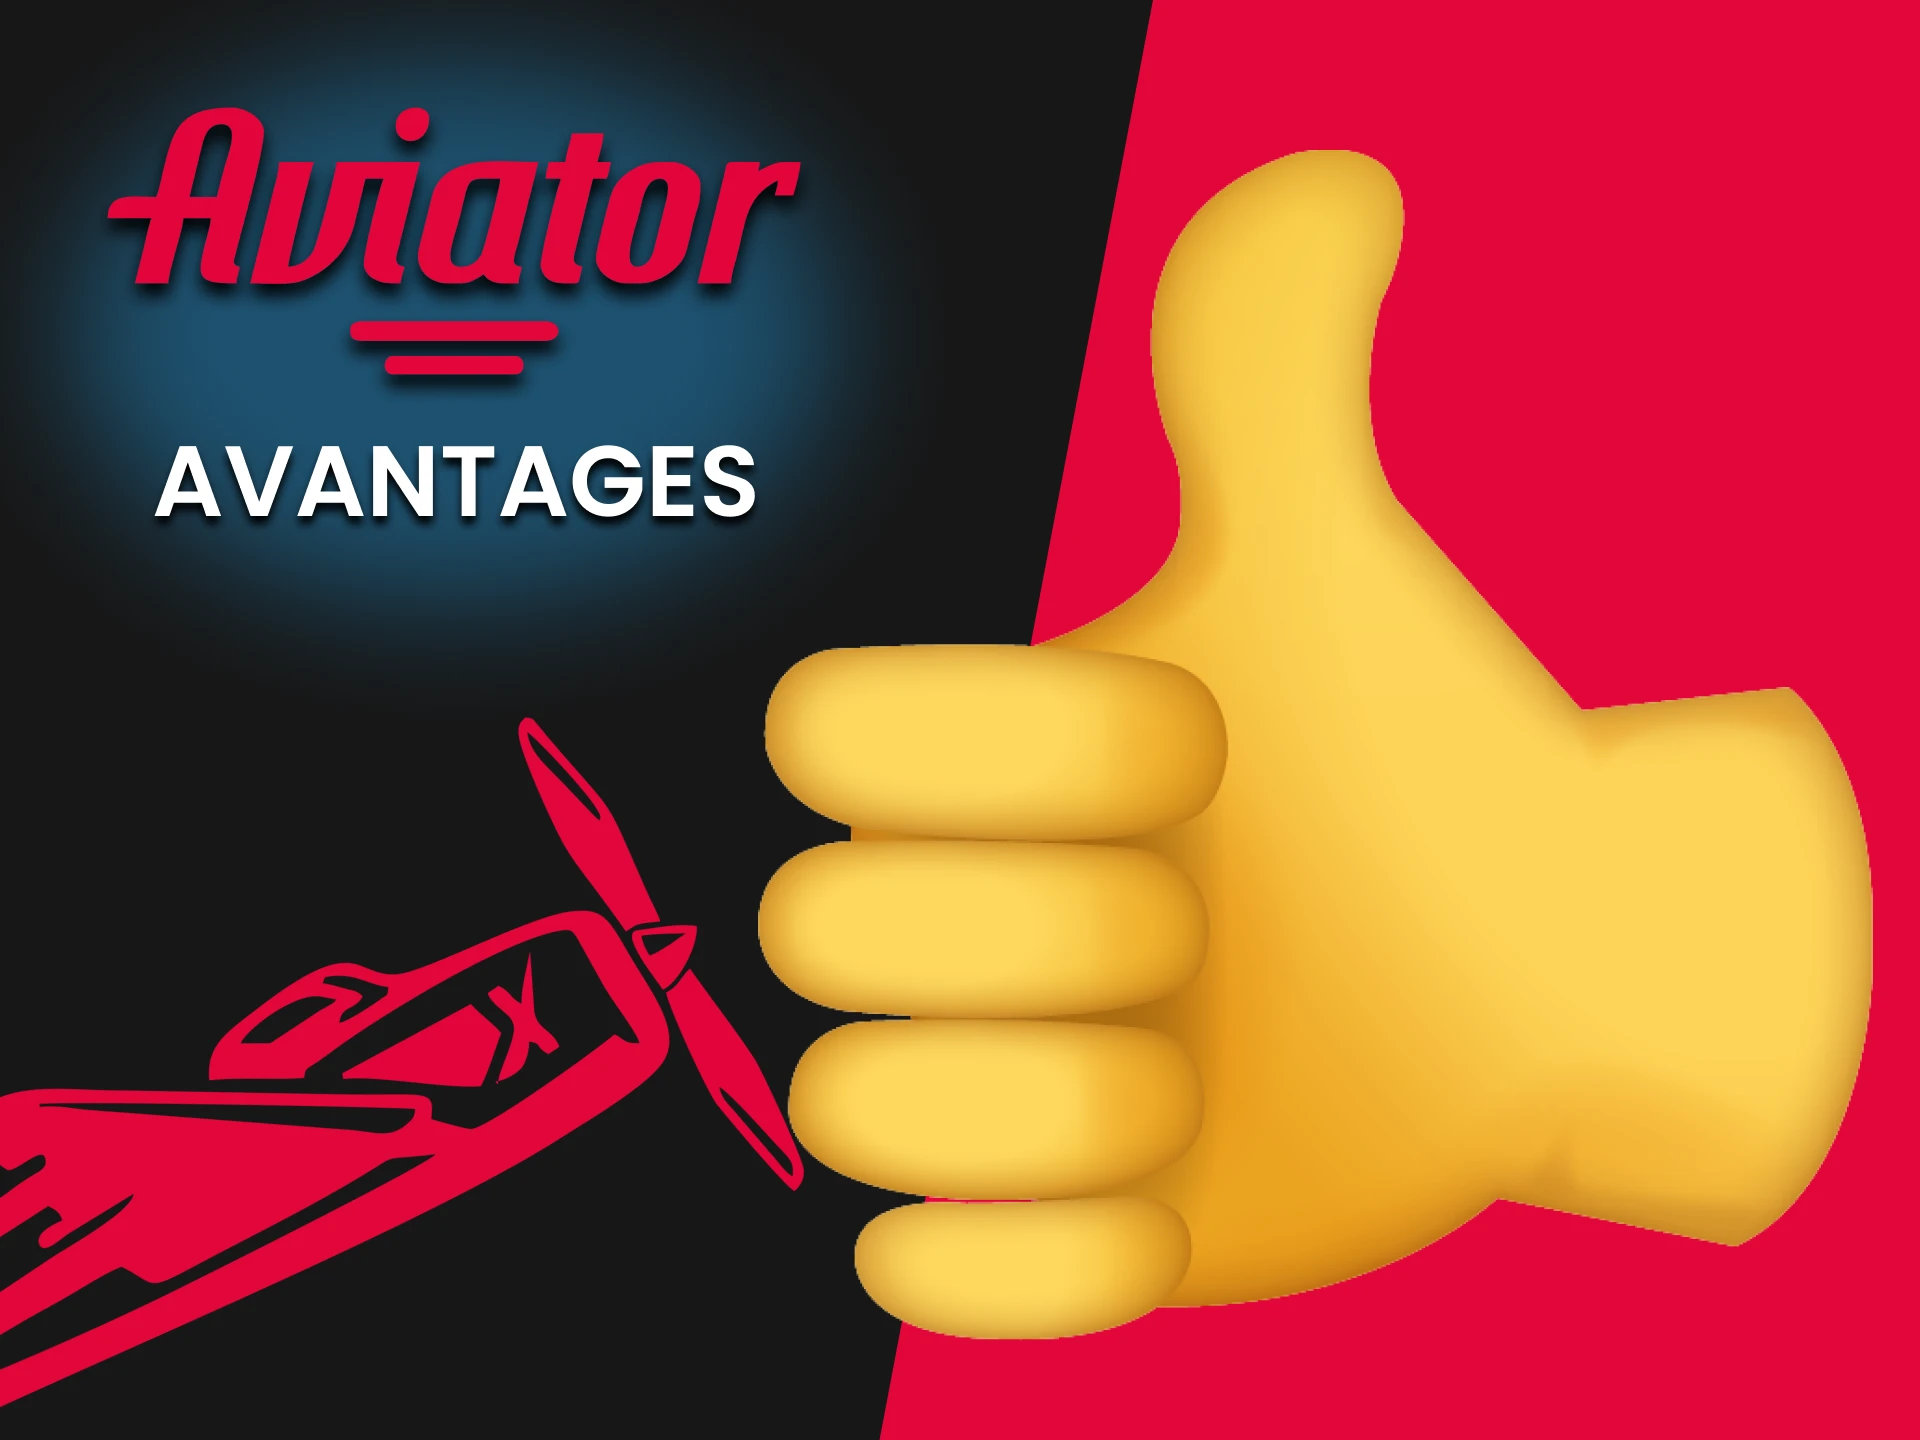 Le jeu Aviator présente de nombreux avantages pour les utilisateurs.